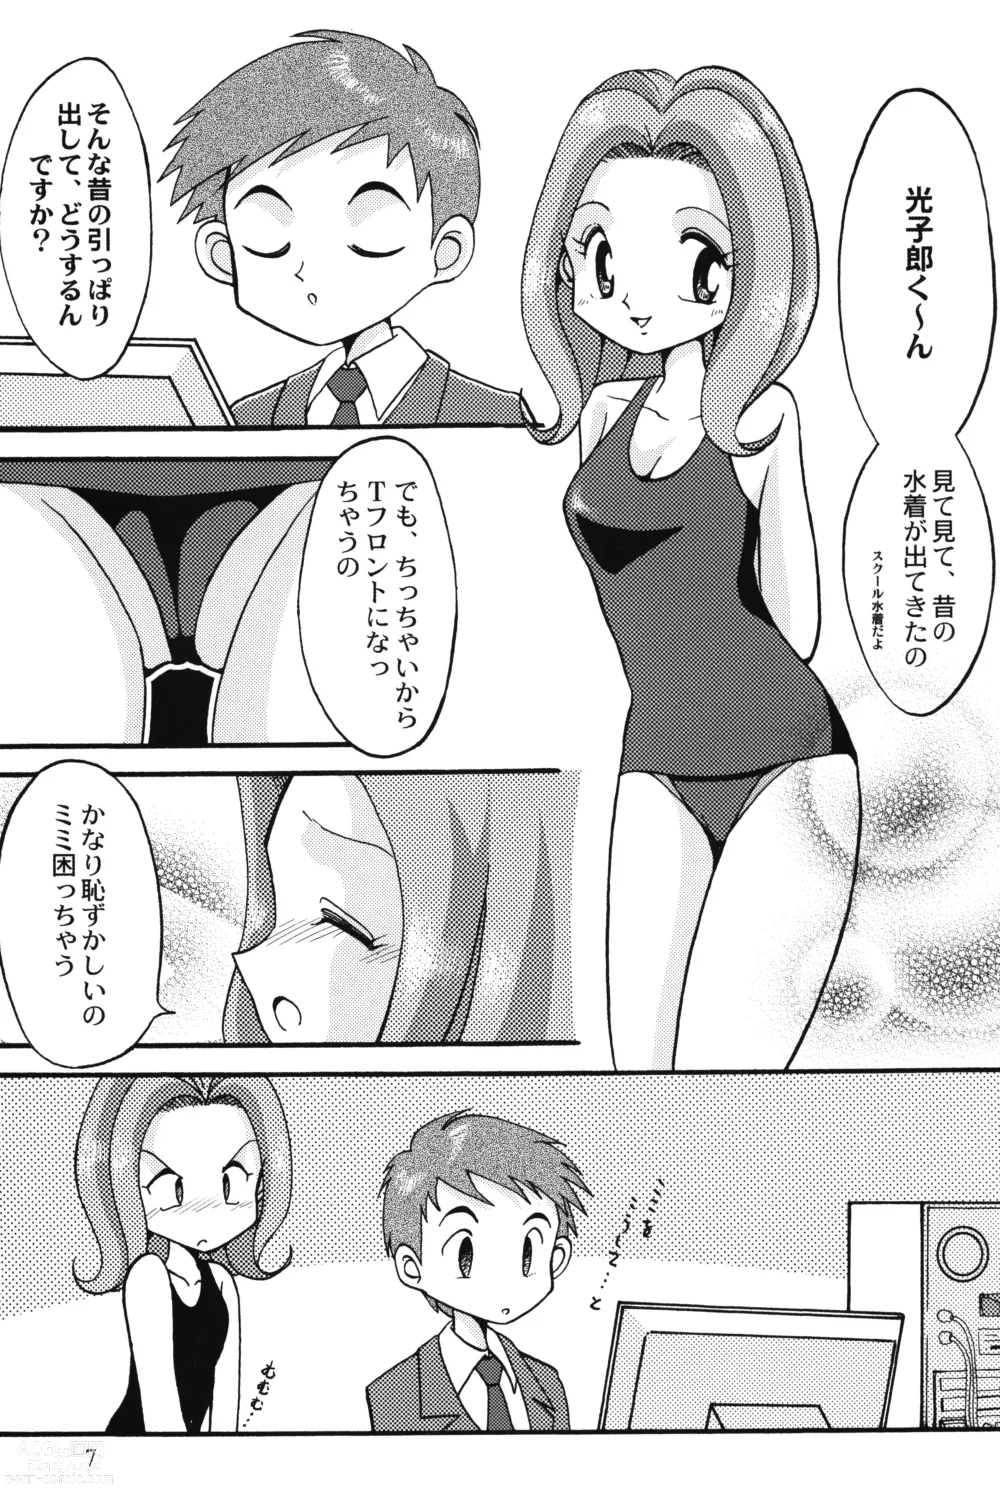 Page 6 of doujinshi Sora Mimi Hour 4